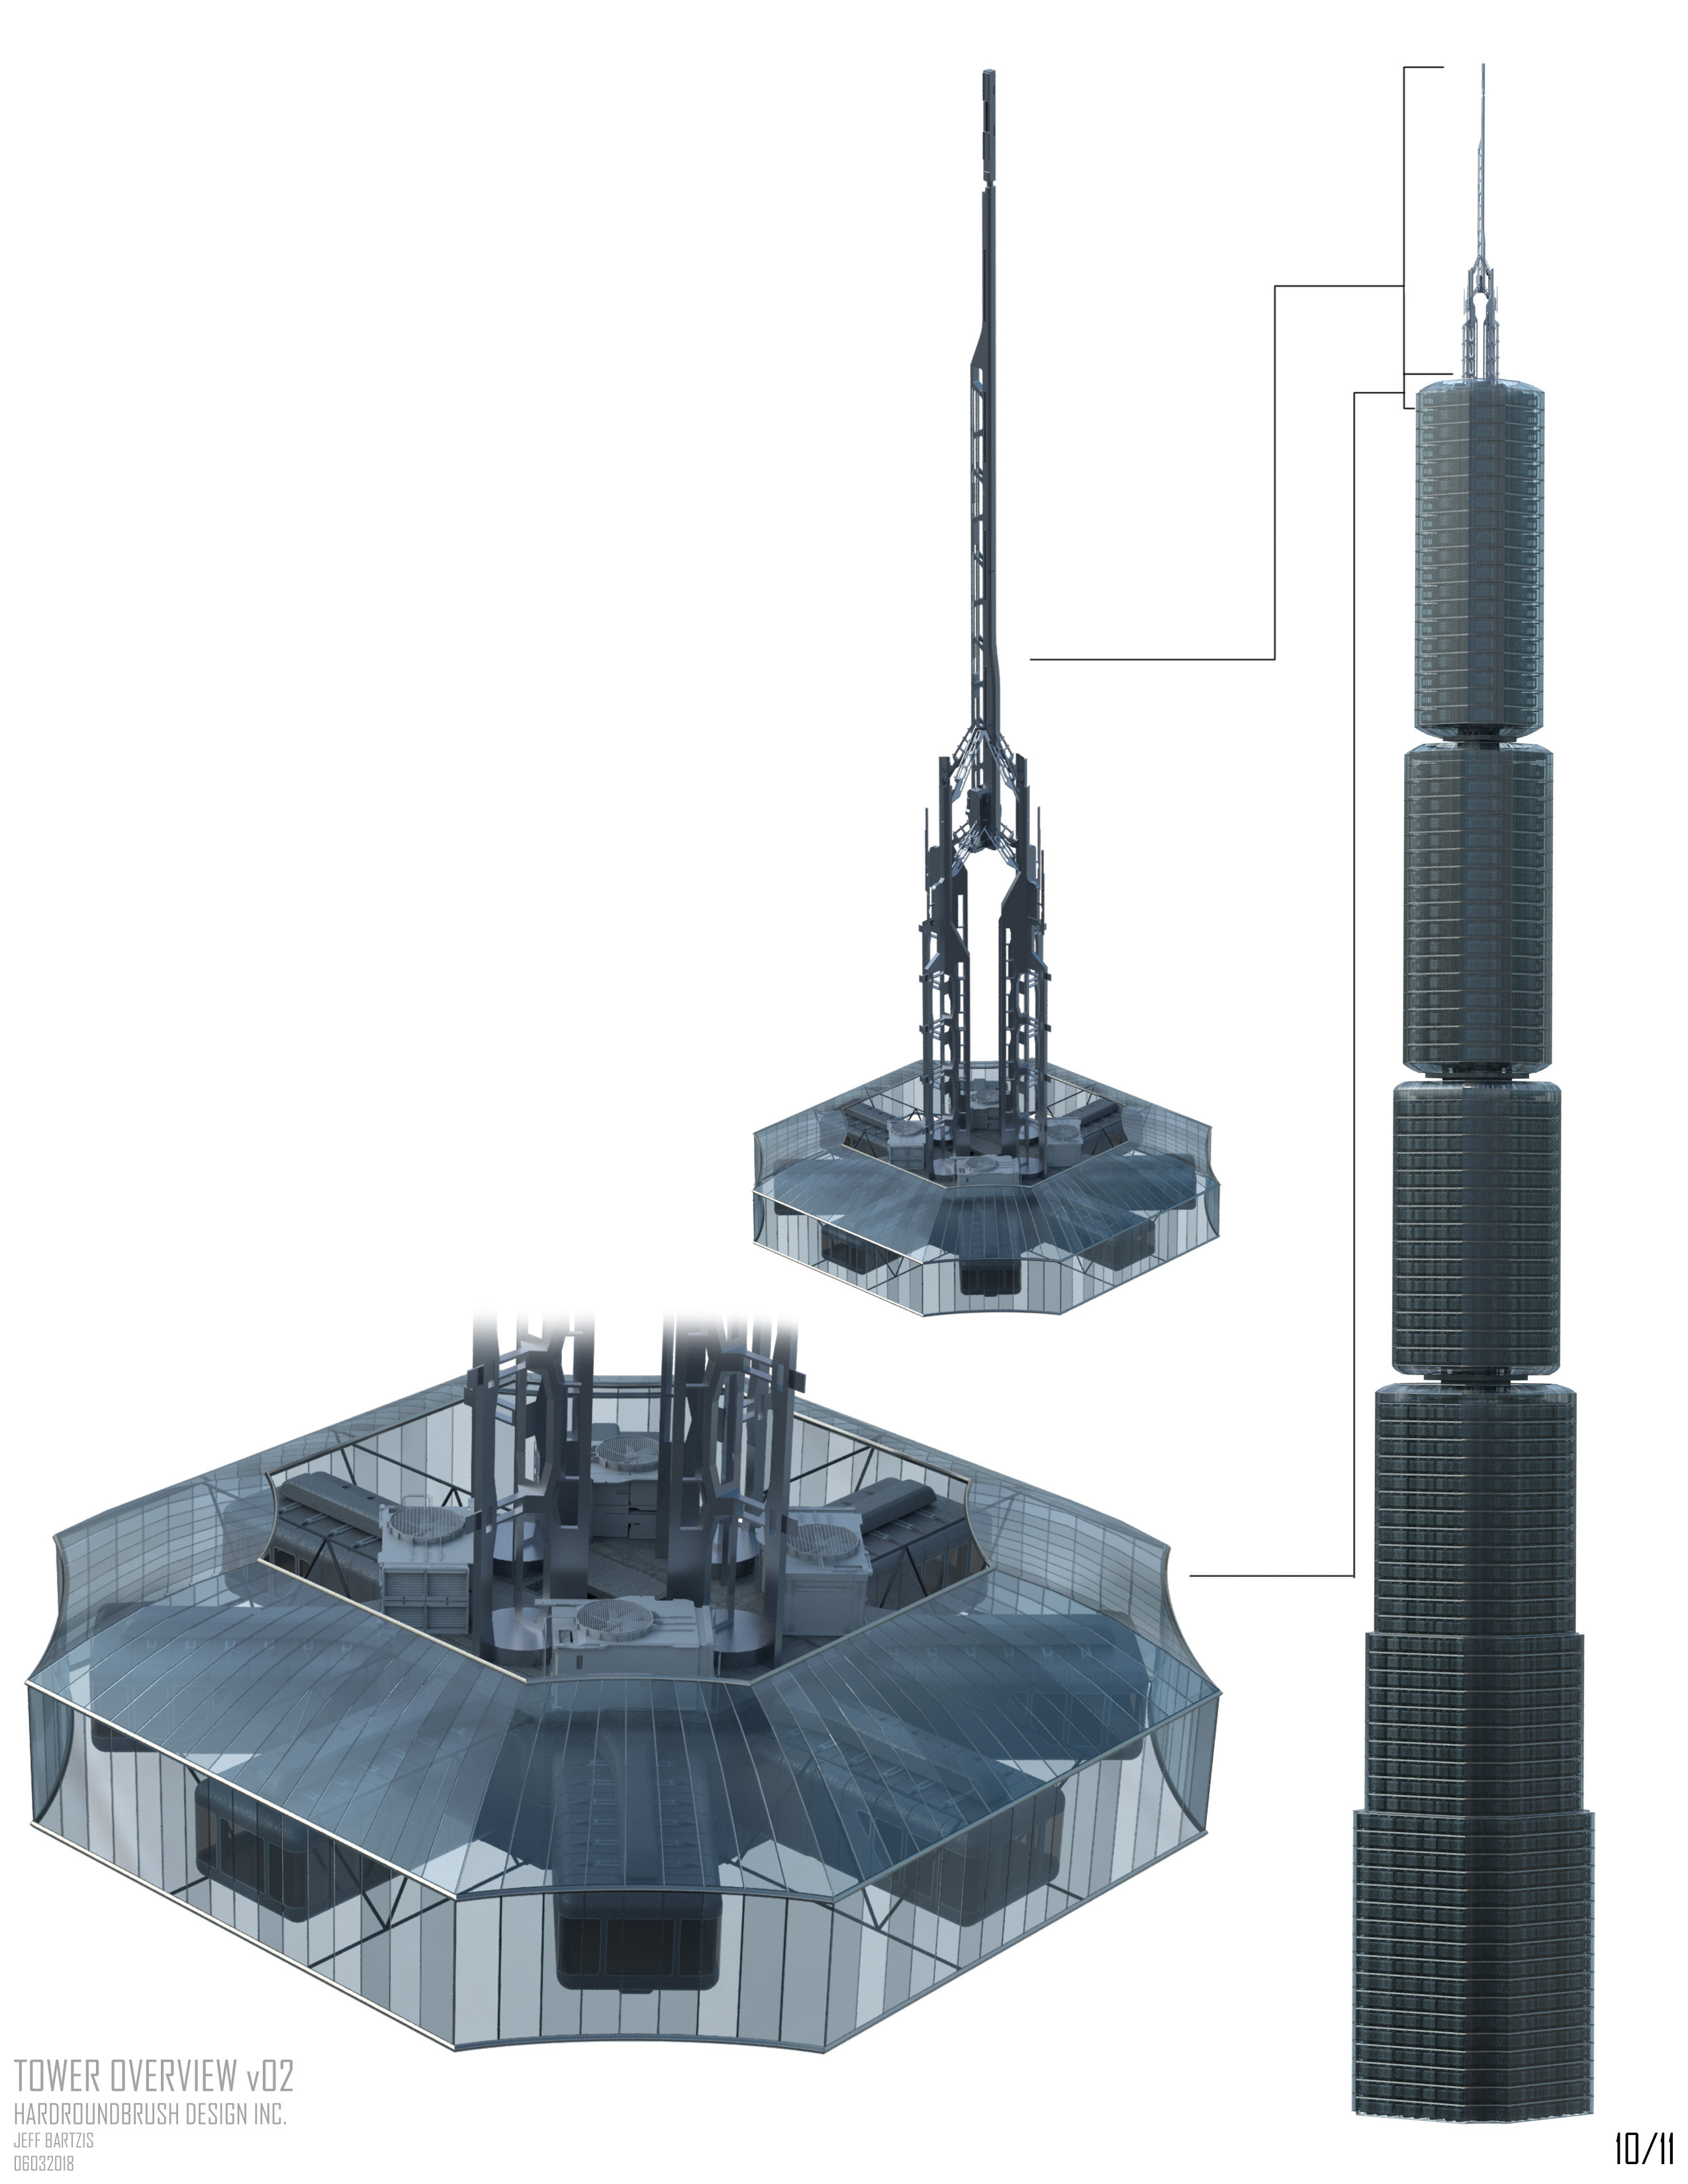 Top spire. (Vitaly bulgarov kitbash elements used)